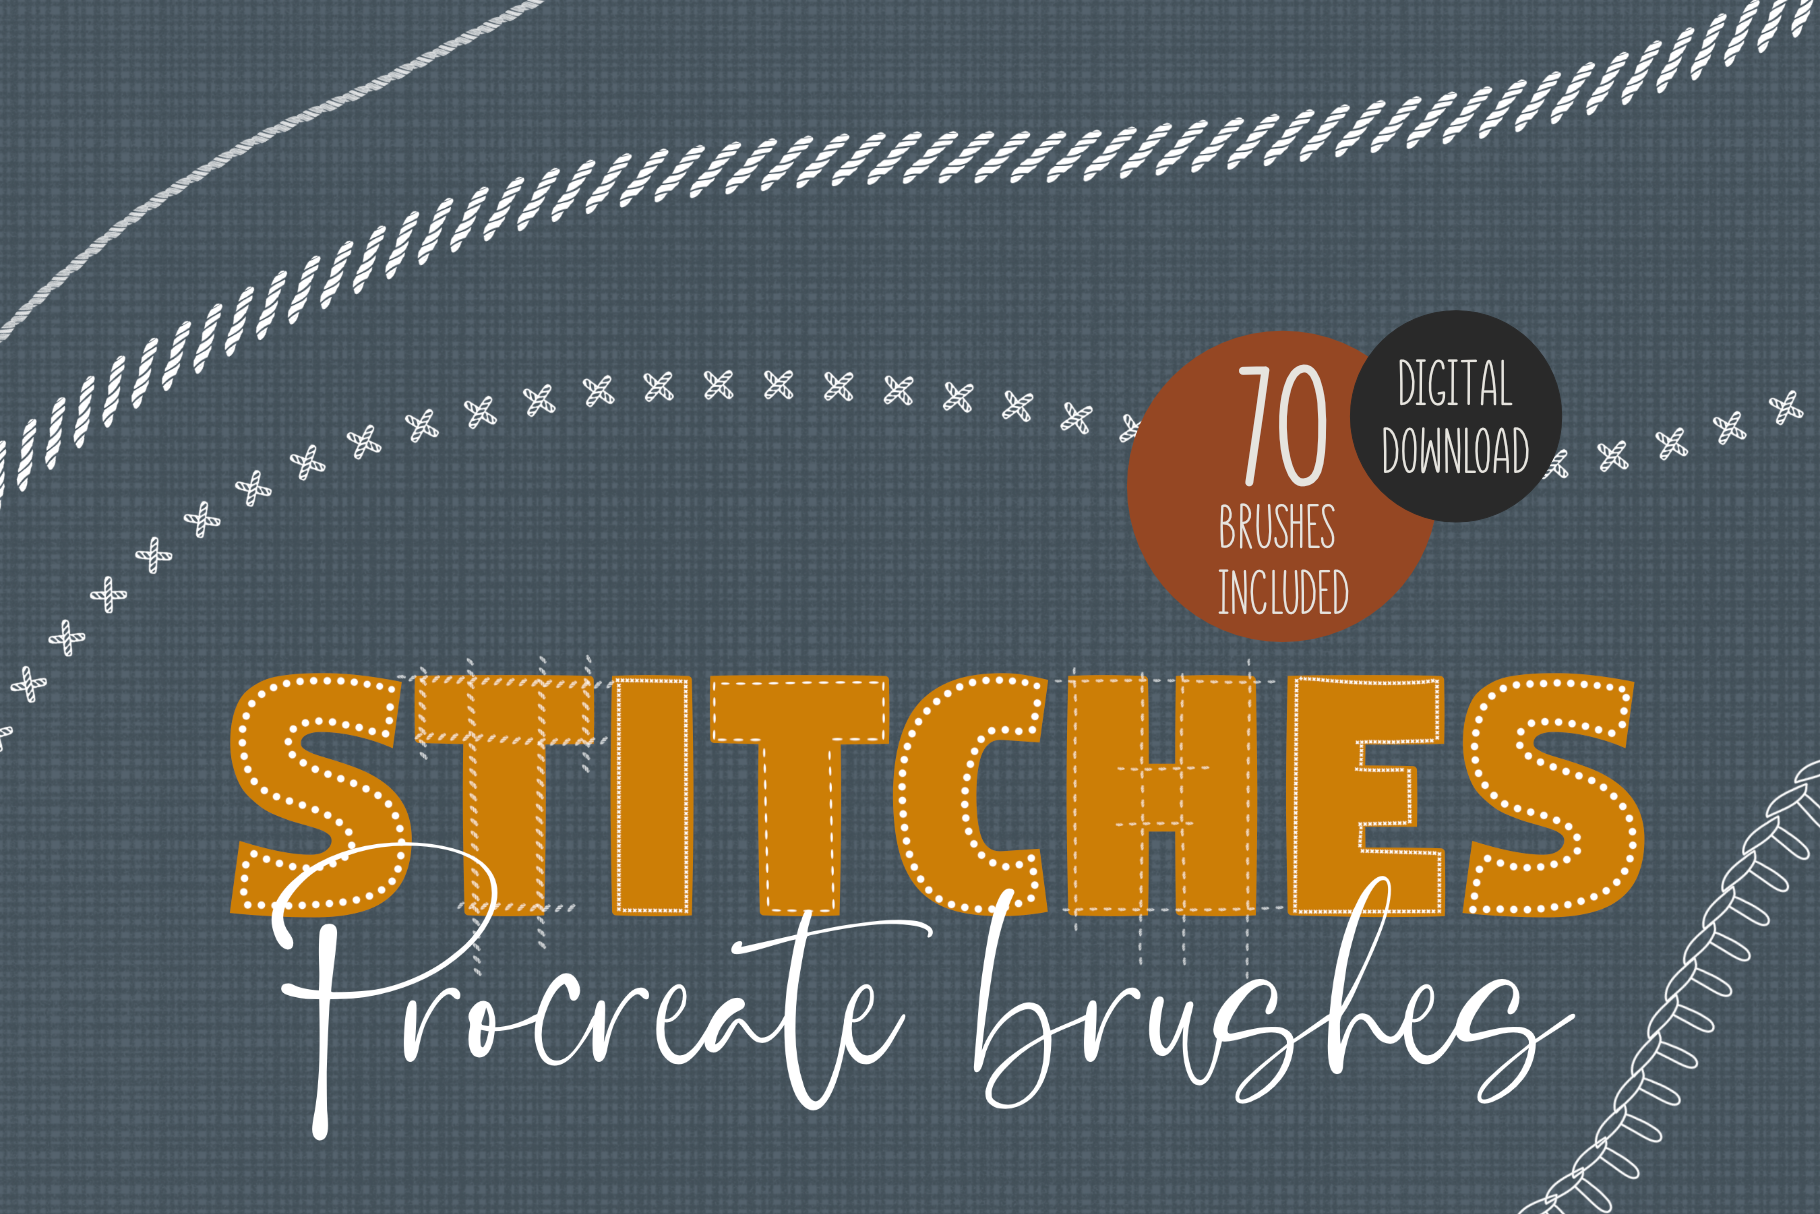 70 Stitches Procreate Brushes